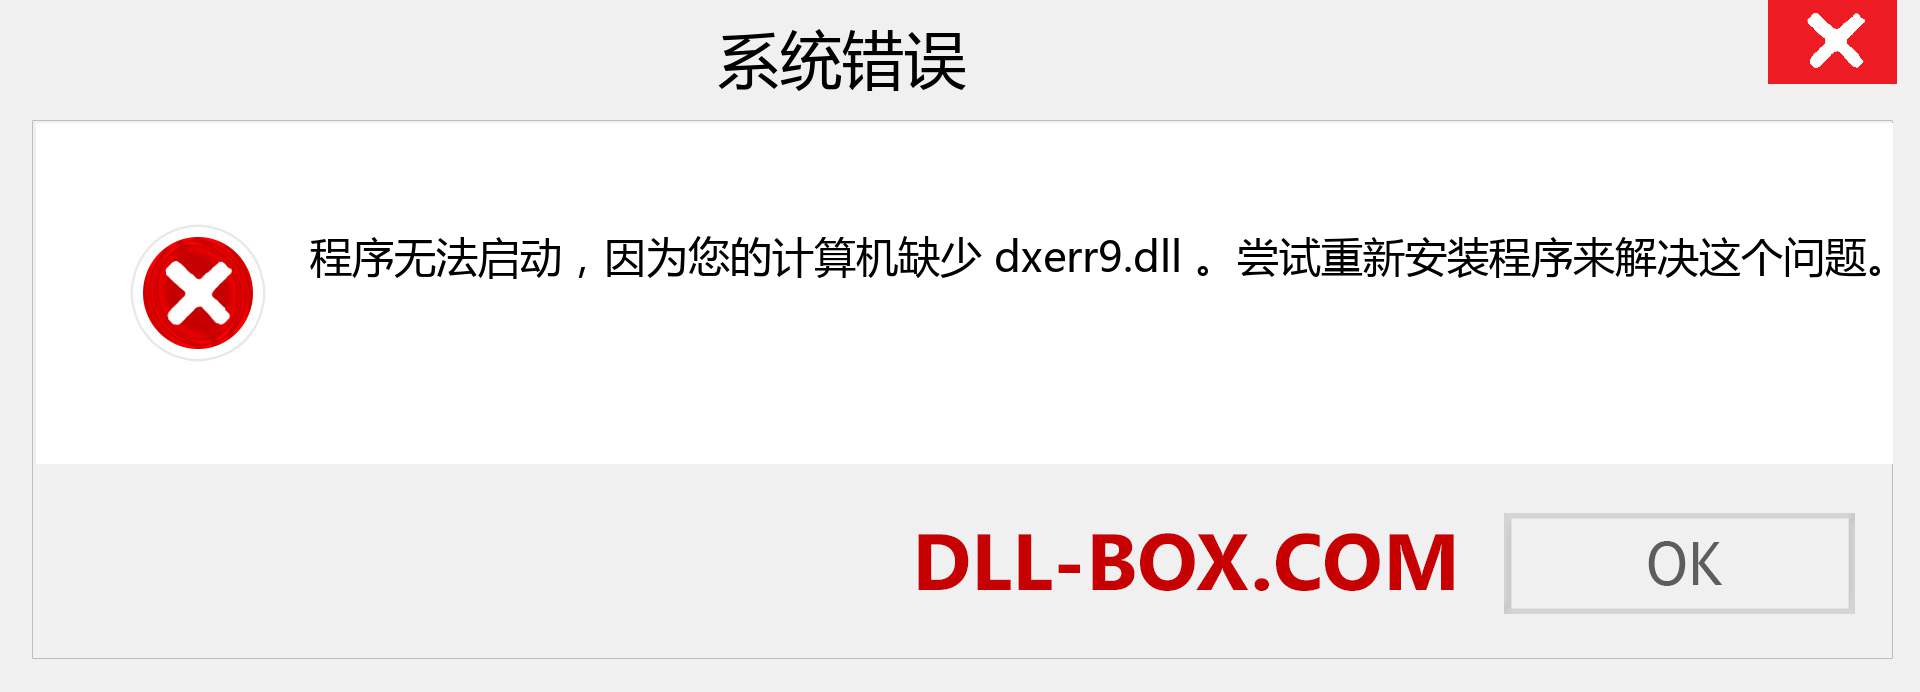 dxerr9.dll 文件丢失？。 适用于 Windows 7、8、10 的下载 - 修复 Windows、照片、图像上的 dxerr9 dll 丢失错误